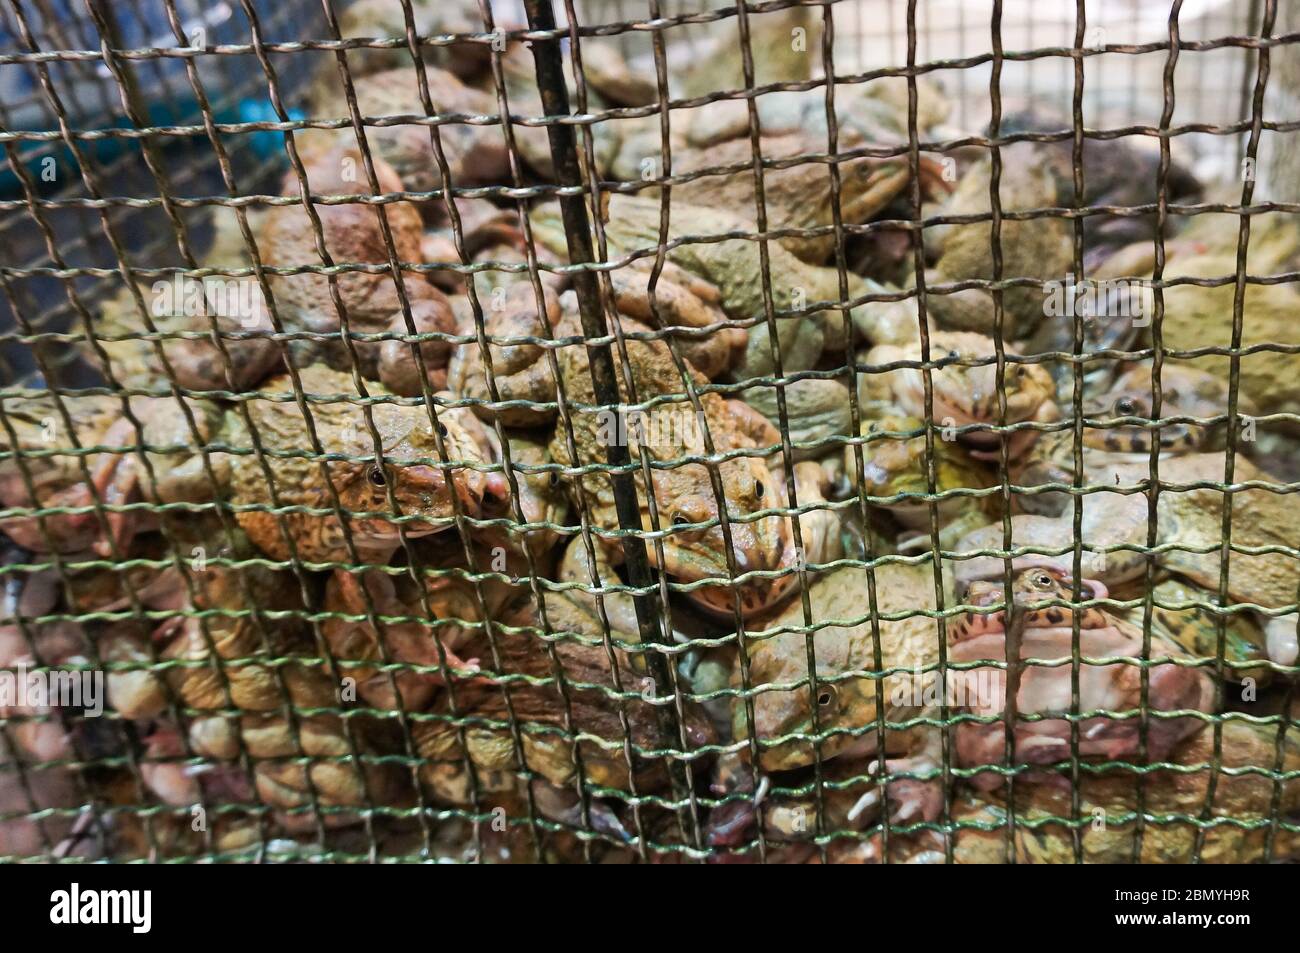 Vivez des grenouilles ouaouarons ou taïwanaises dans une cage pour les vendre comme gourmandises dans un marché de la faune en Chine. Banque D'Images